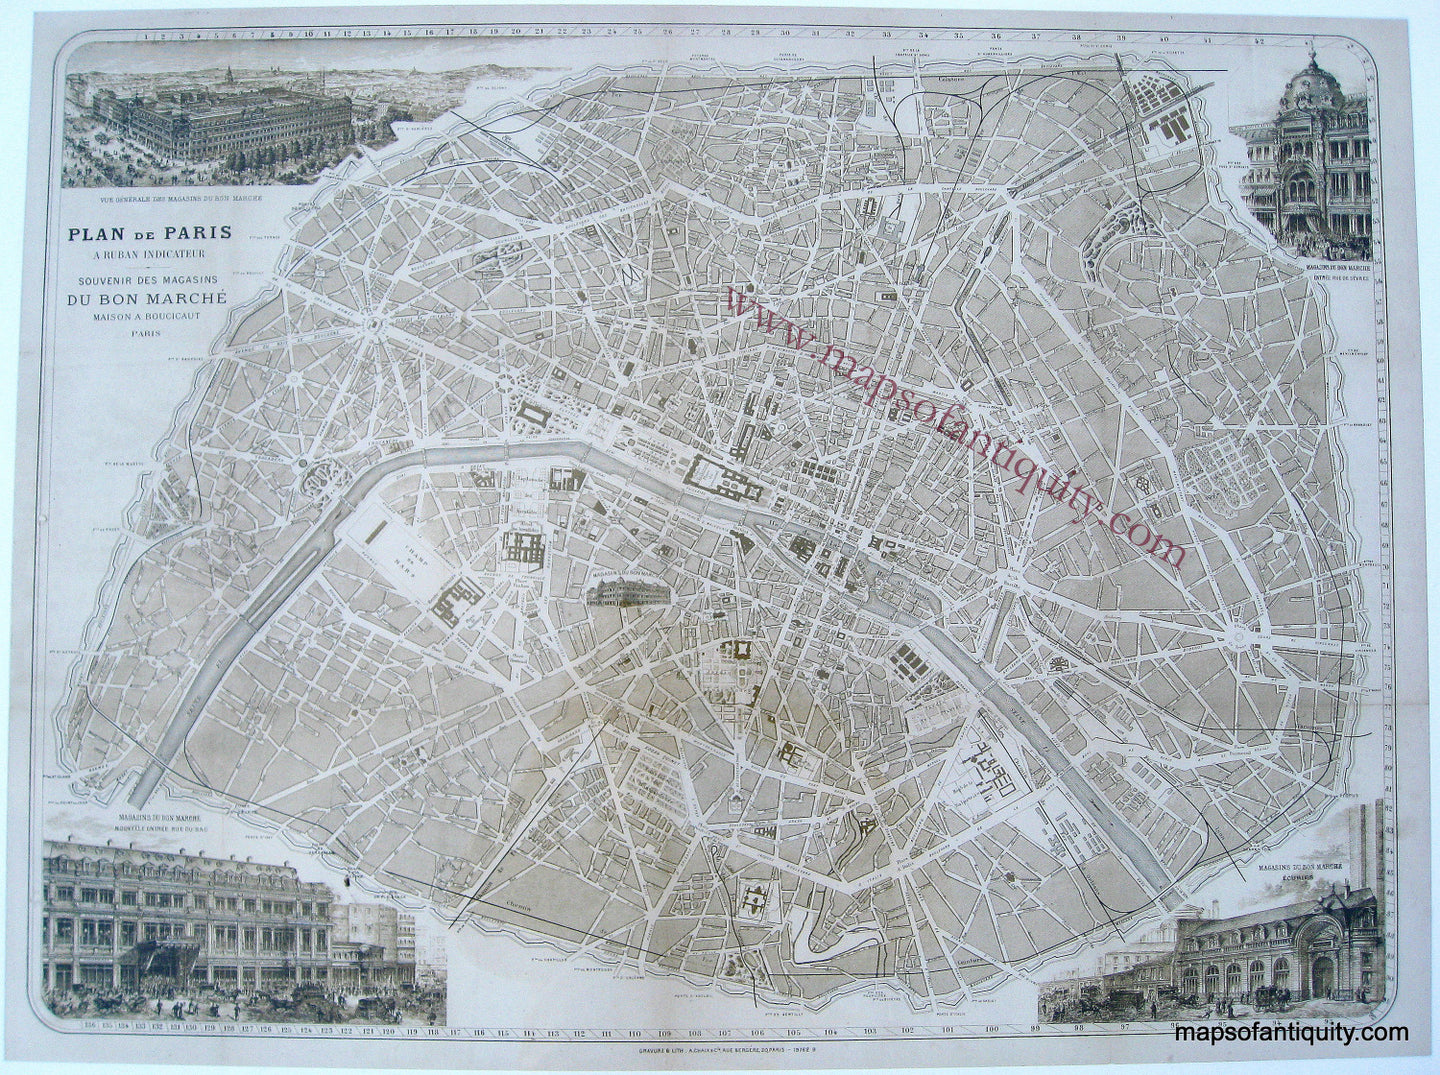 Reproduction-Plan-de-Paris-Souvenir-de-Bon-Marche---Reproduction---Reproduction--Reproduction-Reproduction-Maps-Of-Antiquity